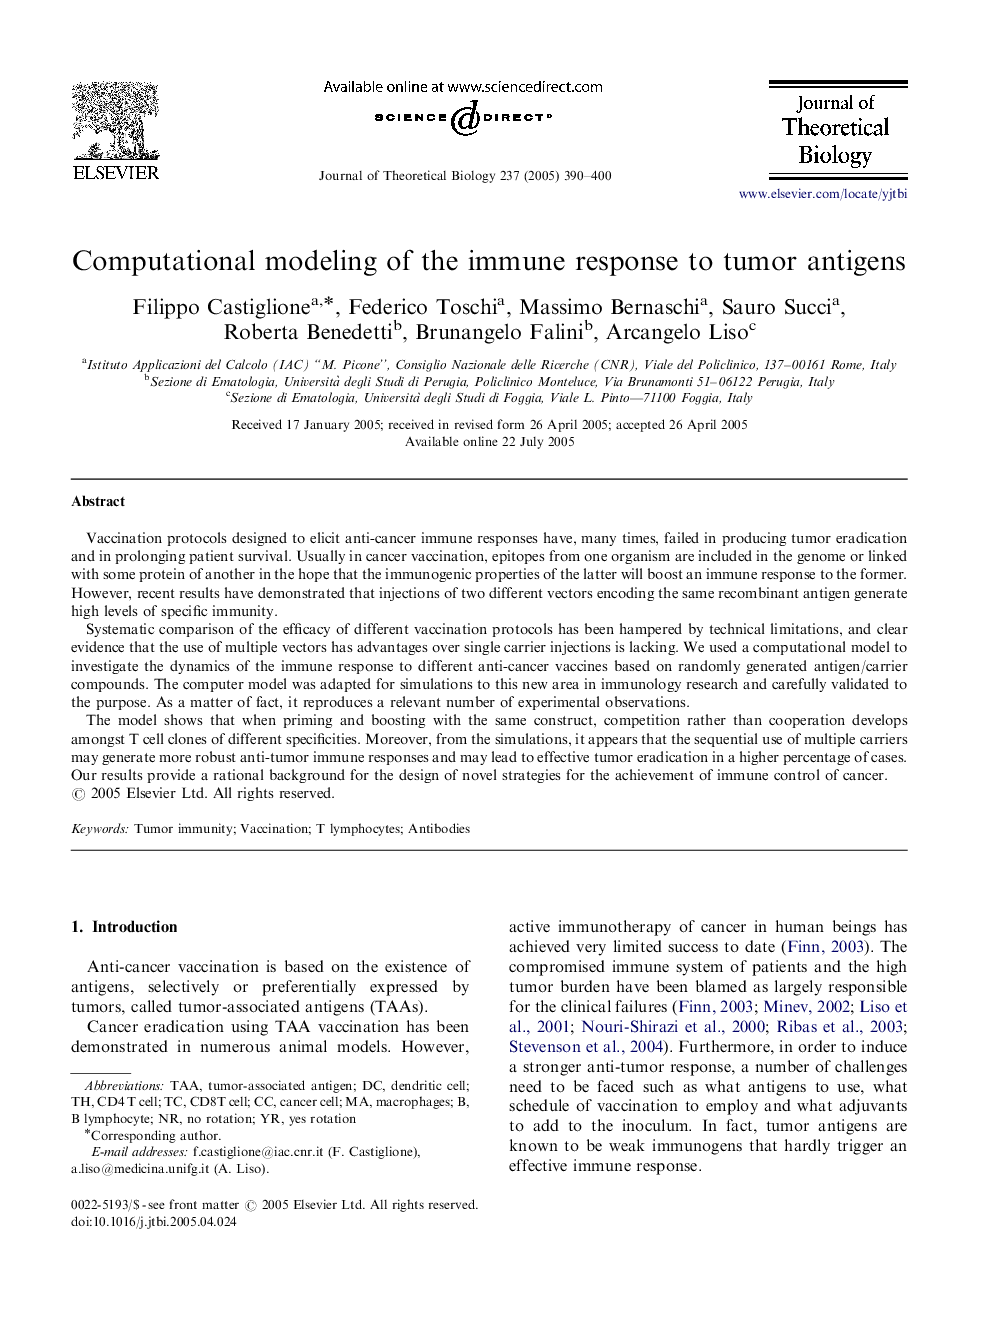 Computational modeling of the immune response to tumor antigens